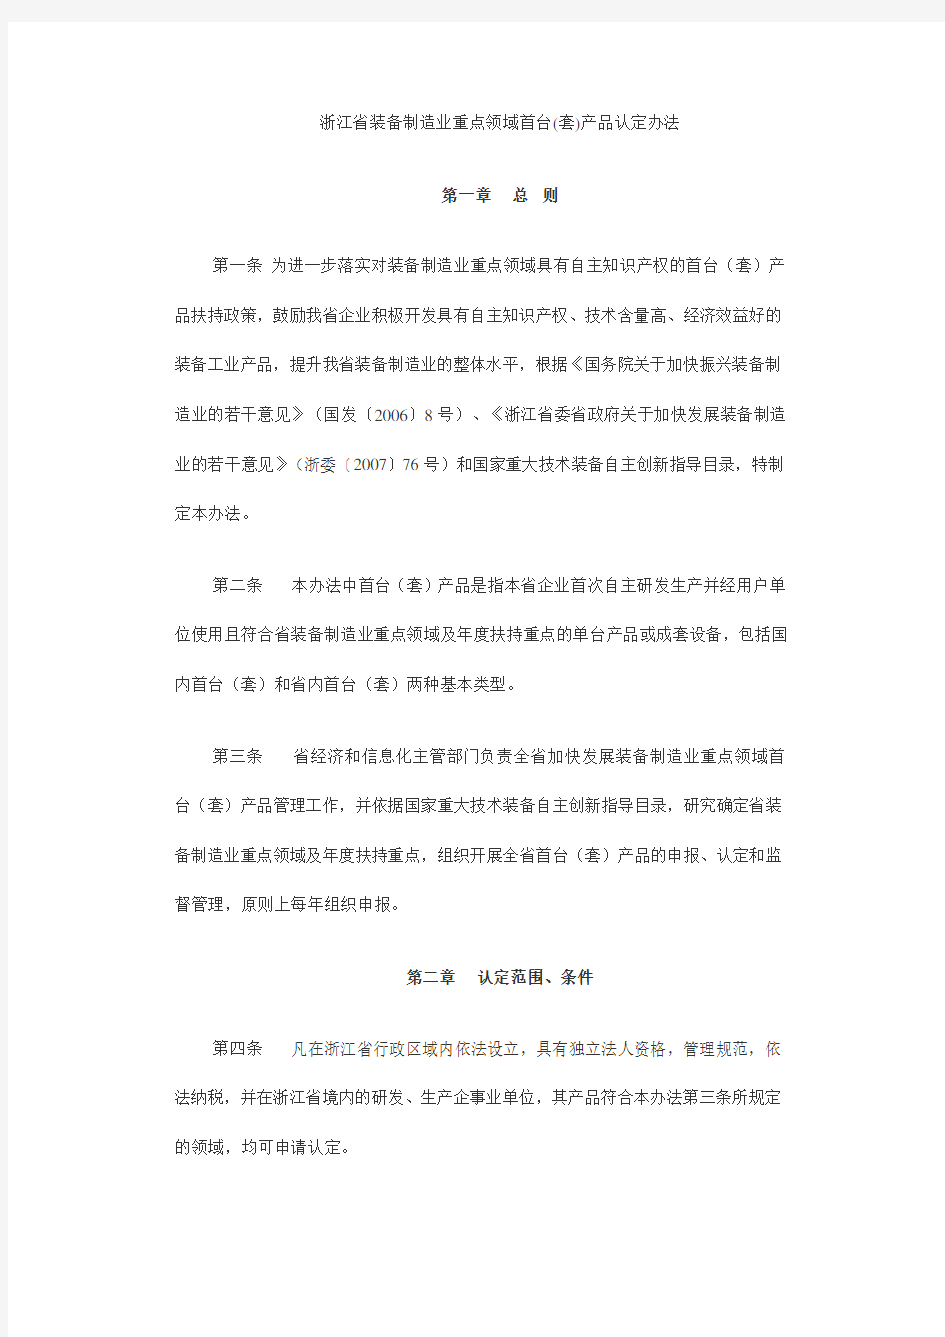 浙江省装备制造业重点领域首台(套)产品认定办法